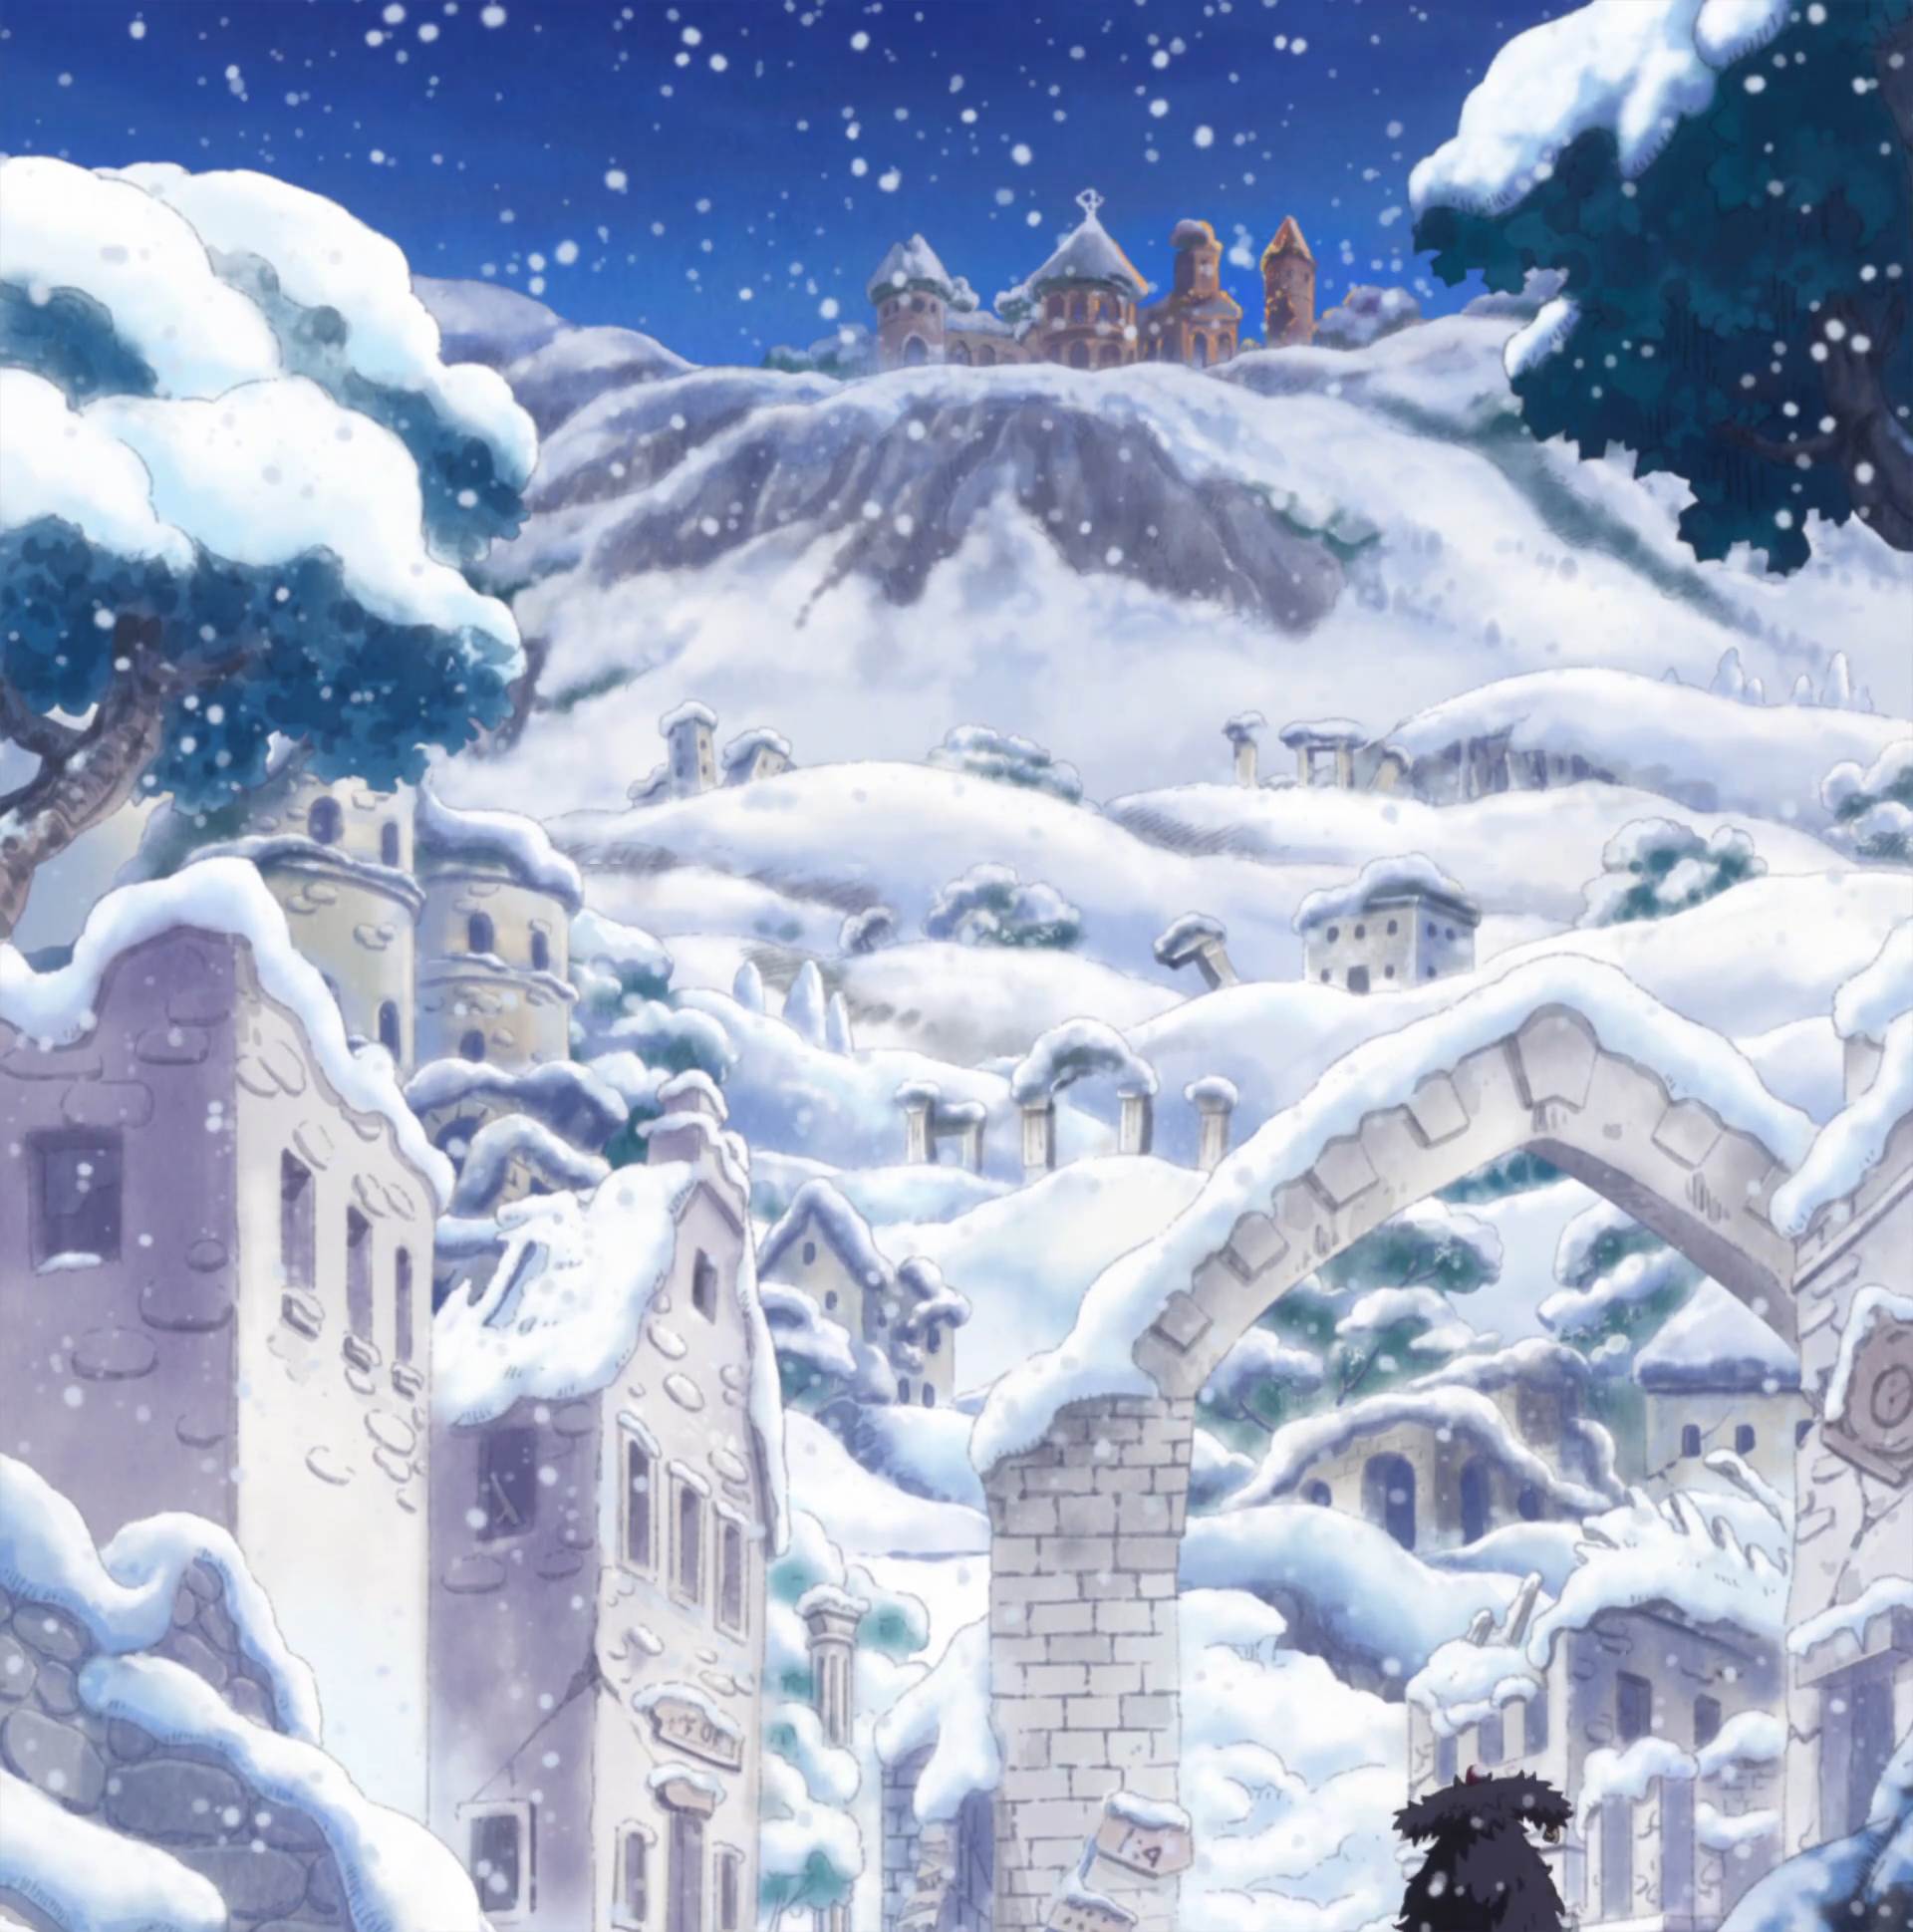 Snow Island, Project: One Piece Wiki